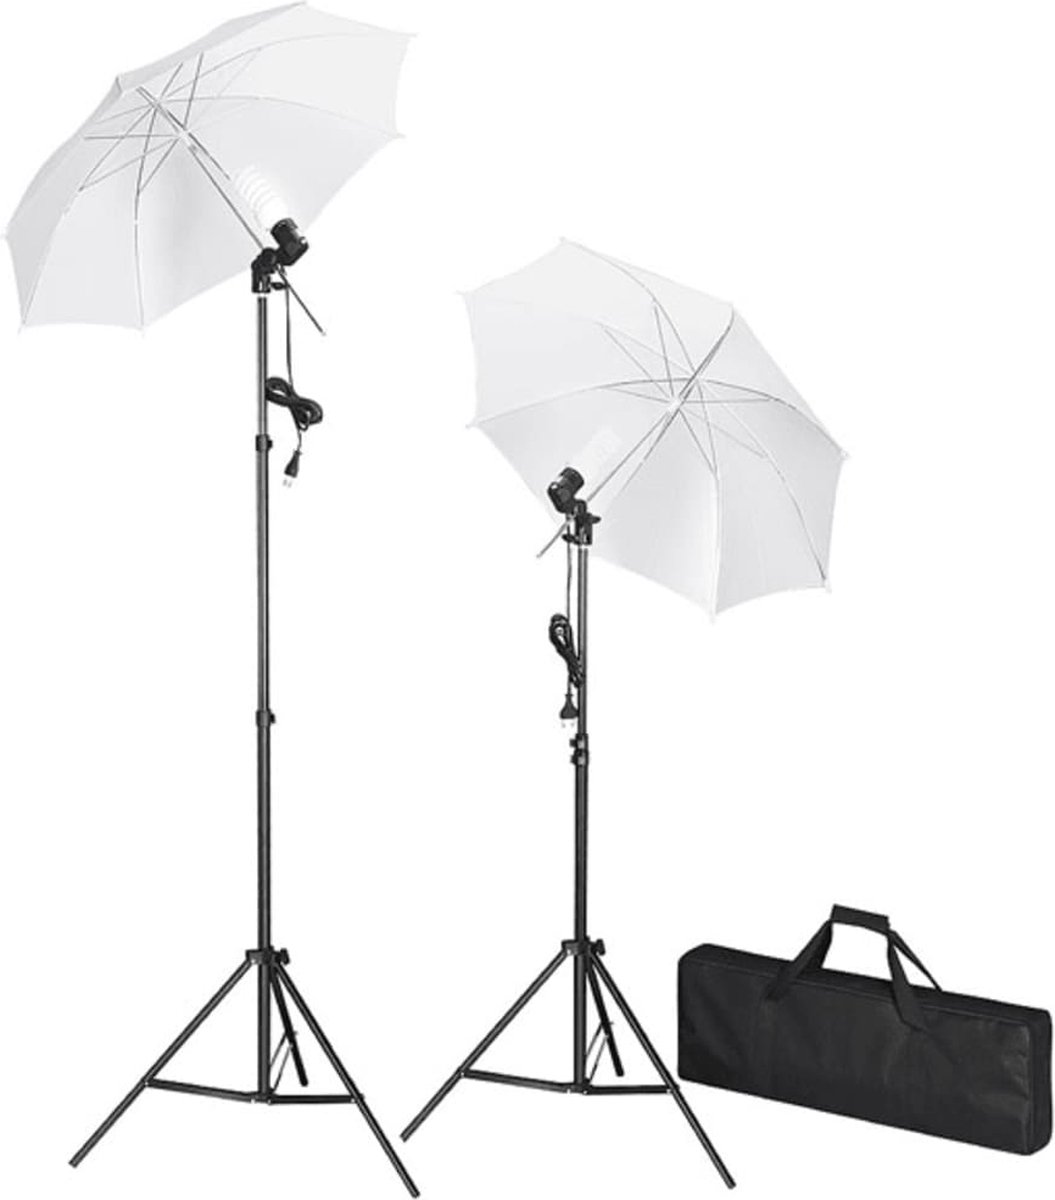 Prolenta premium Studiolampenset inclusief statieven en paraplu's